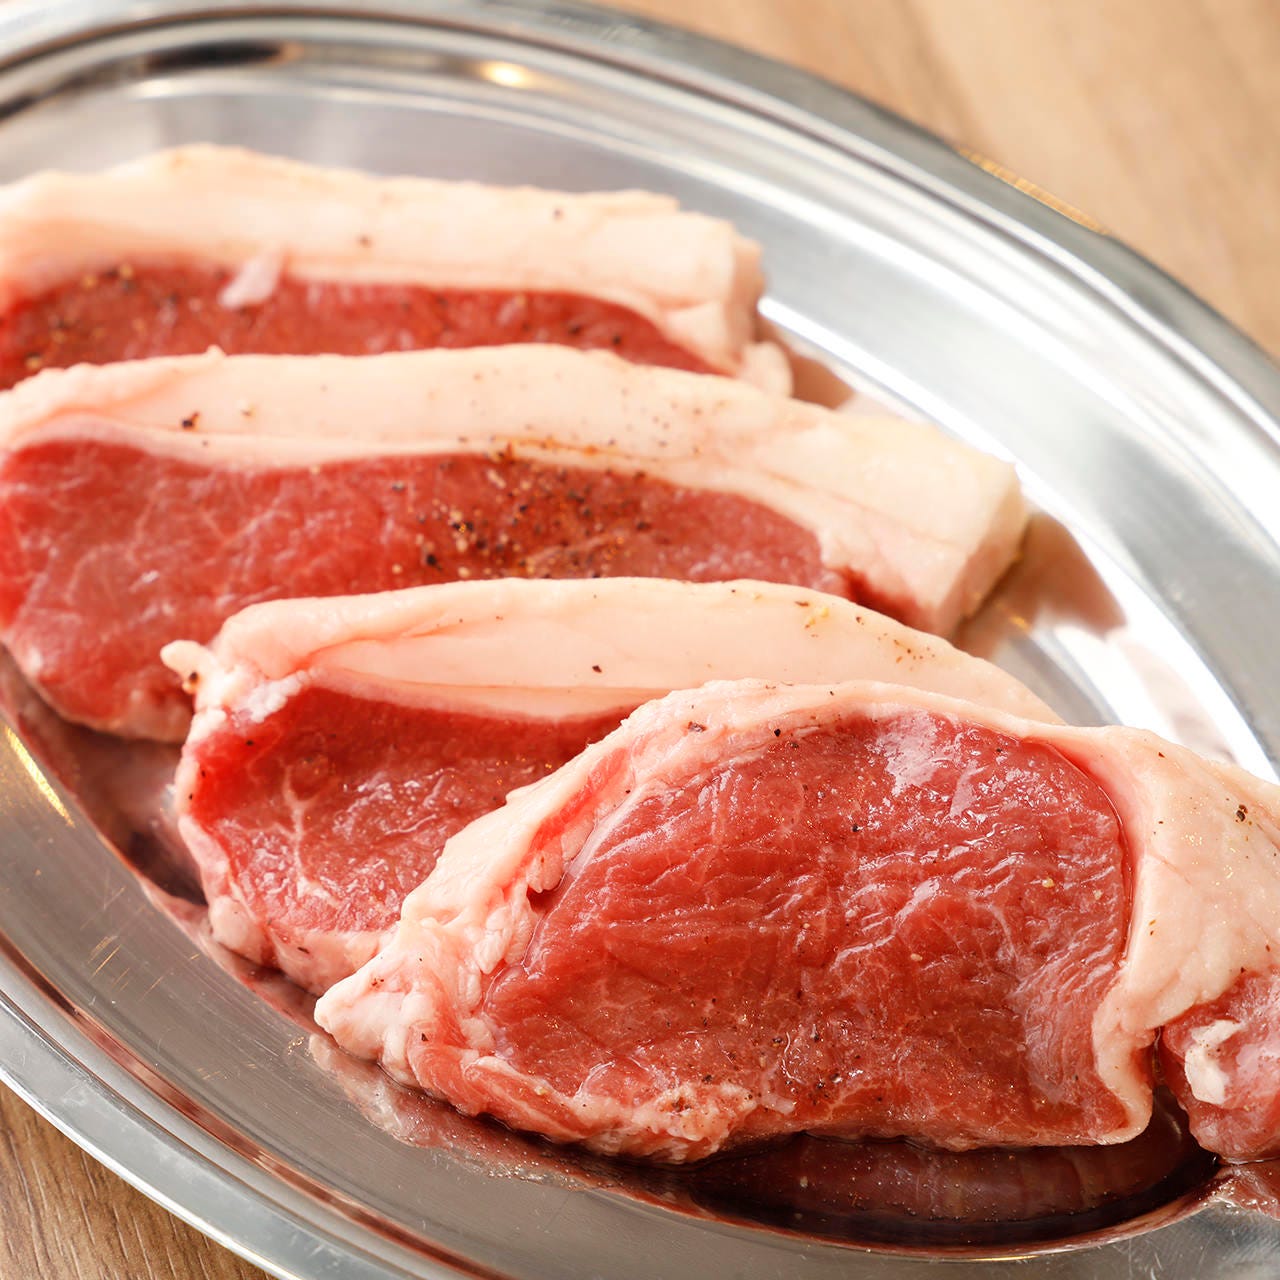 アイスランド産の生ラムは、柔らかくクセが少ない上質なお肉